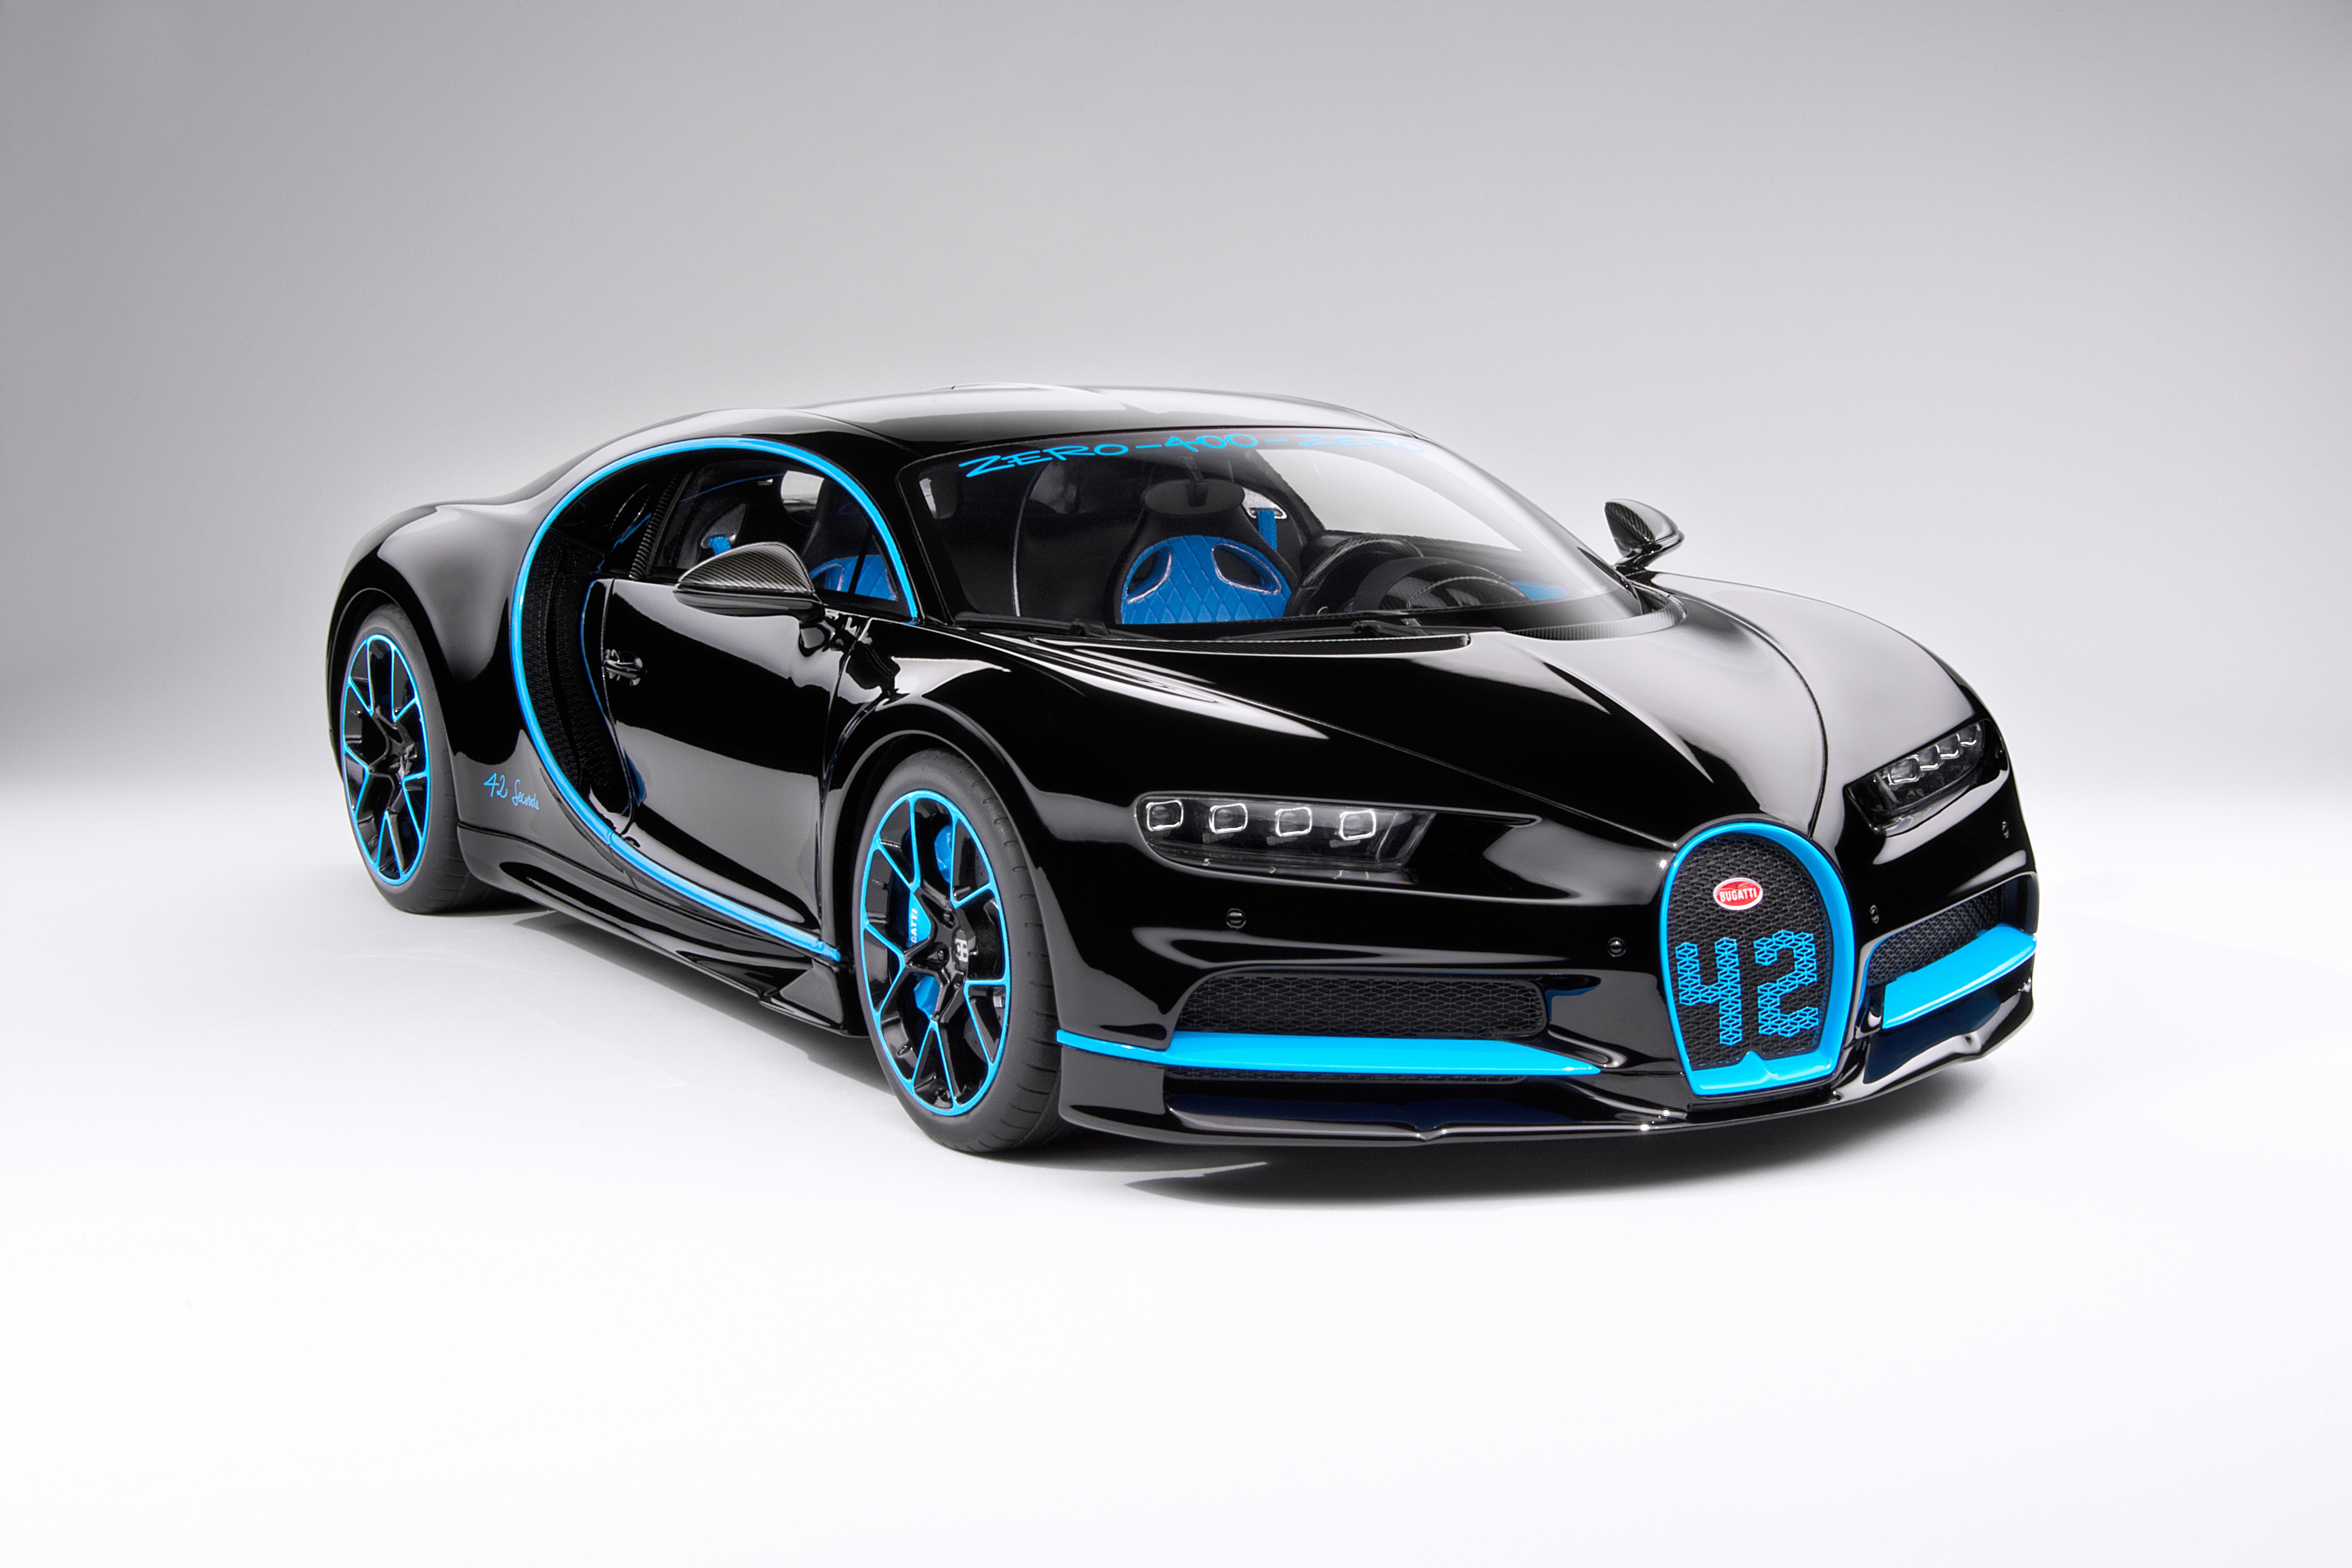 Download mobile wallpaper Bugatti, Car, Supercar, Bugatti Chiron, Vehicles, Black Car for free.